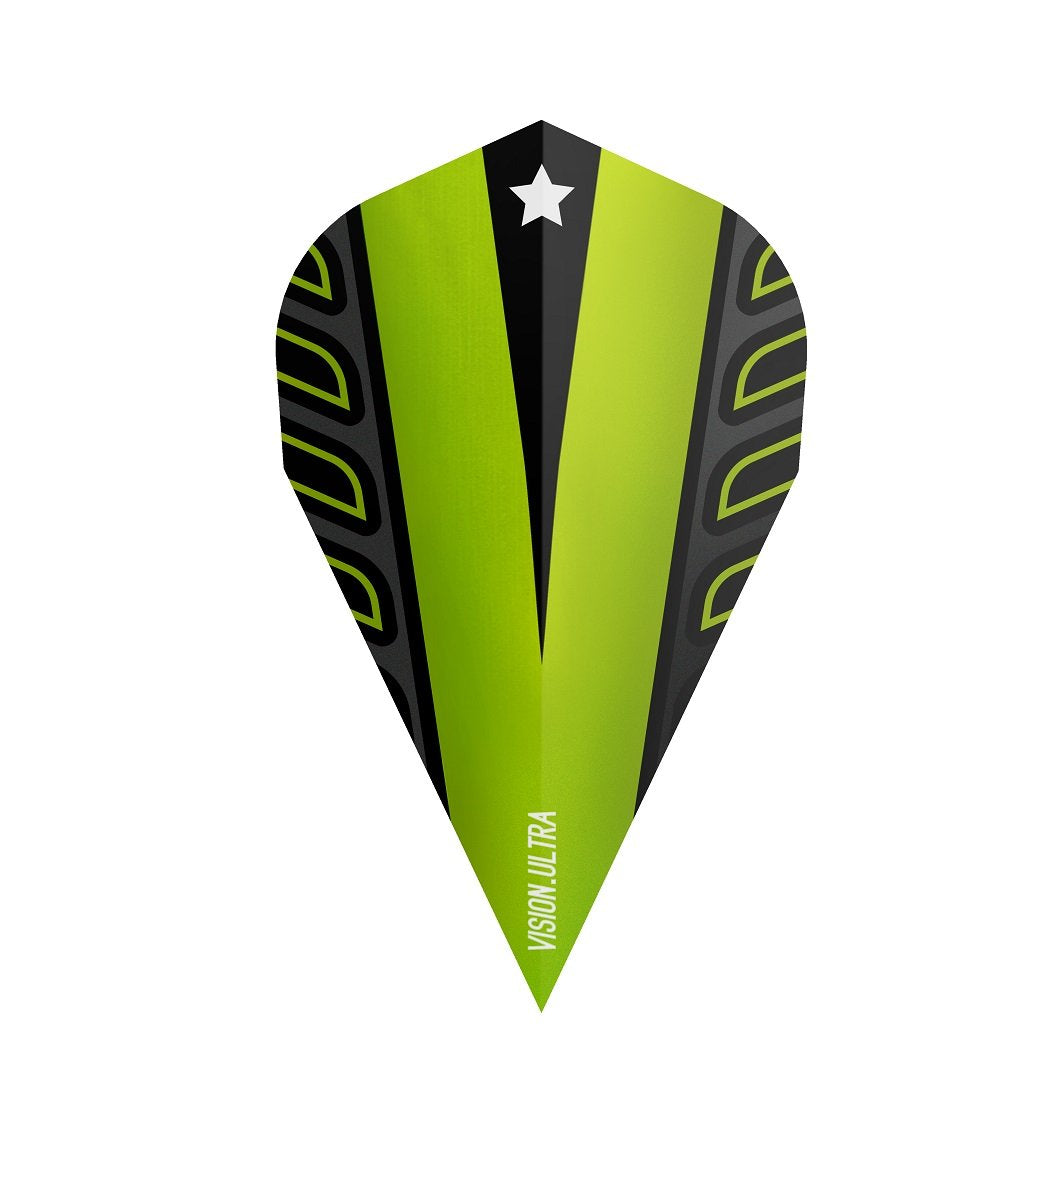 Target Lime Green Vapor Voltage Vision Ultra Dart Flights